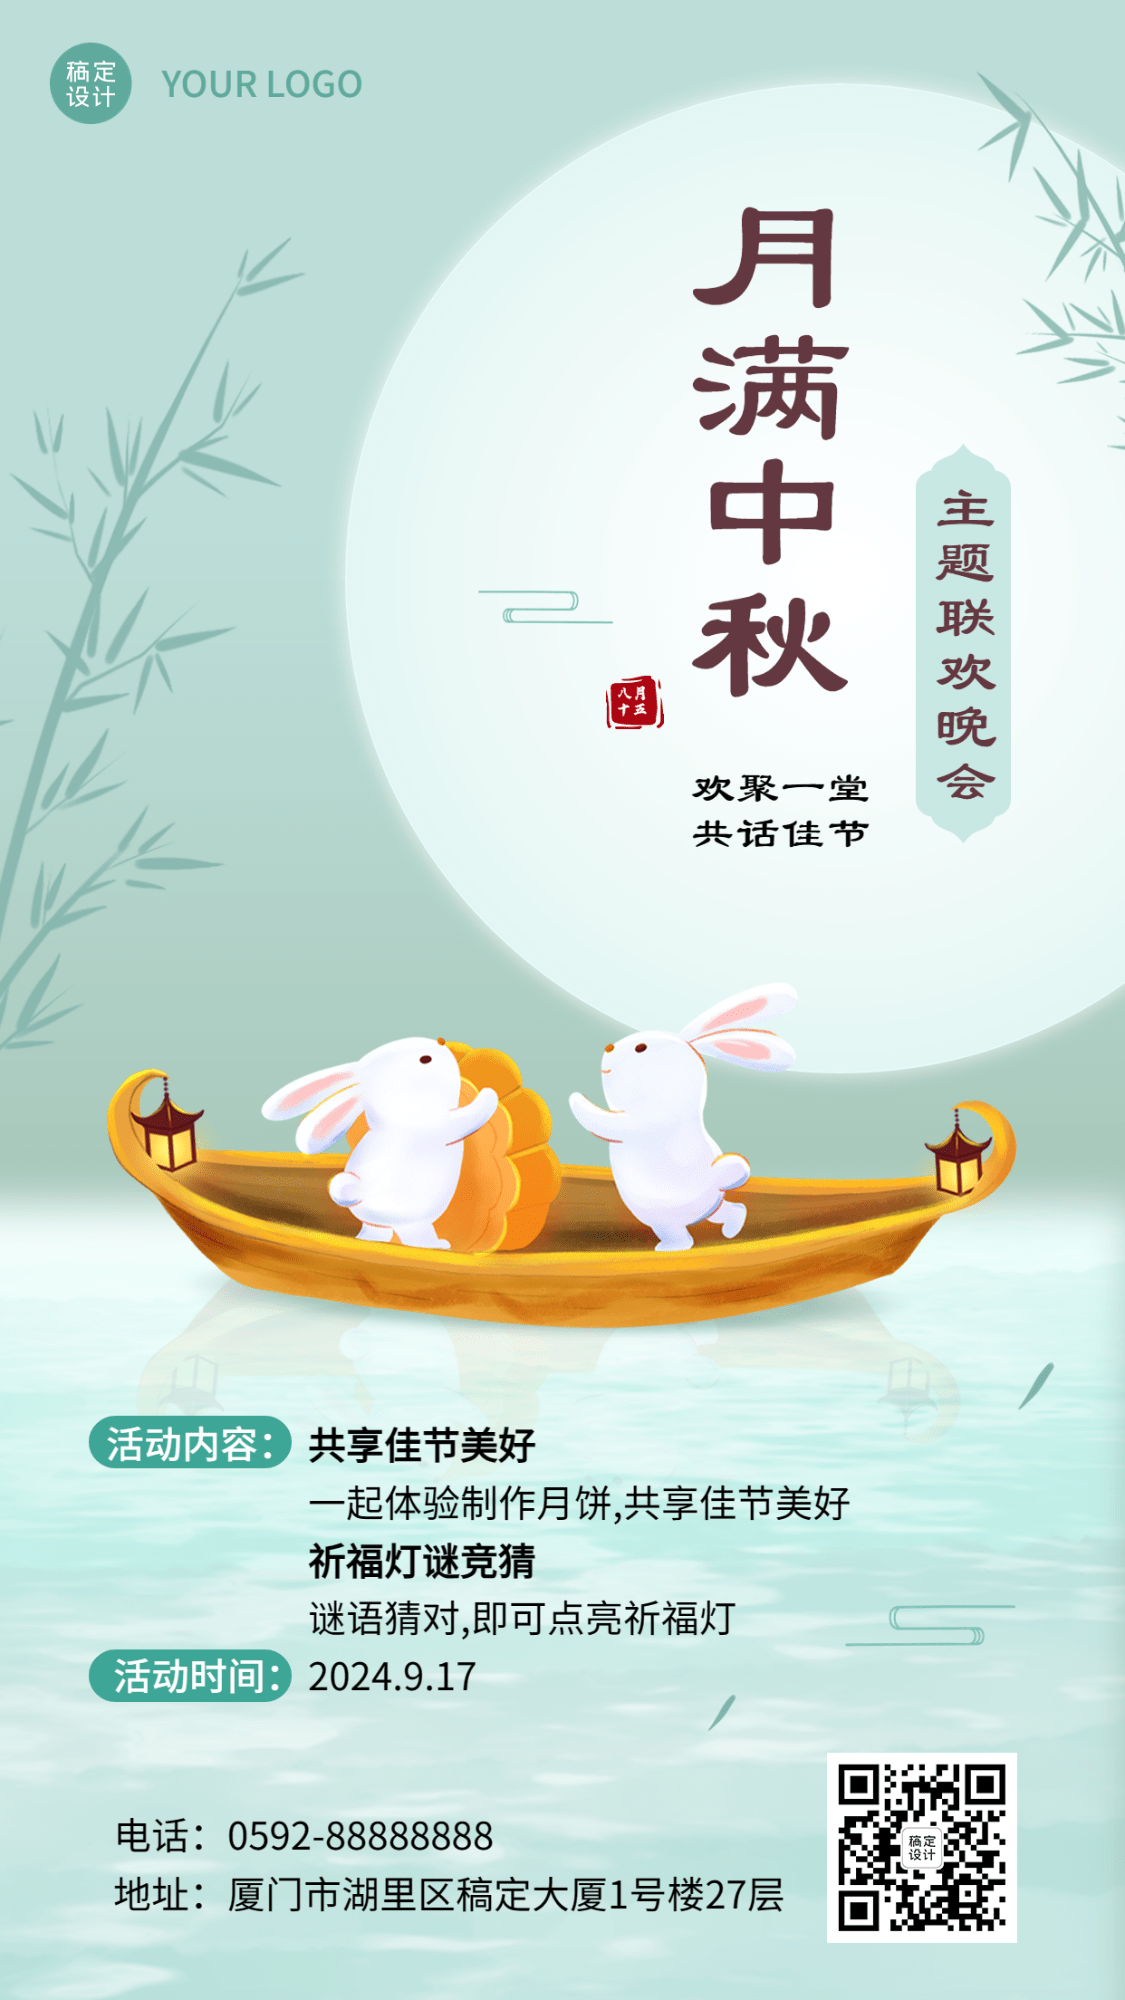 中秋节节日活动手绘插画手机海报